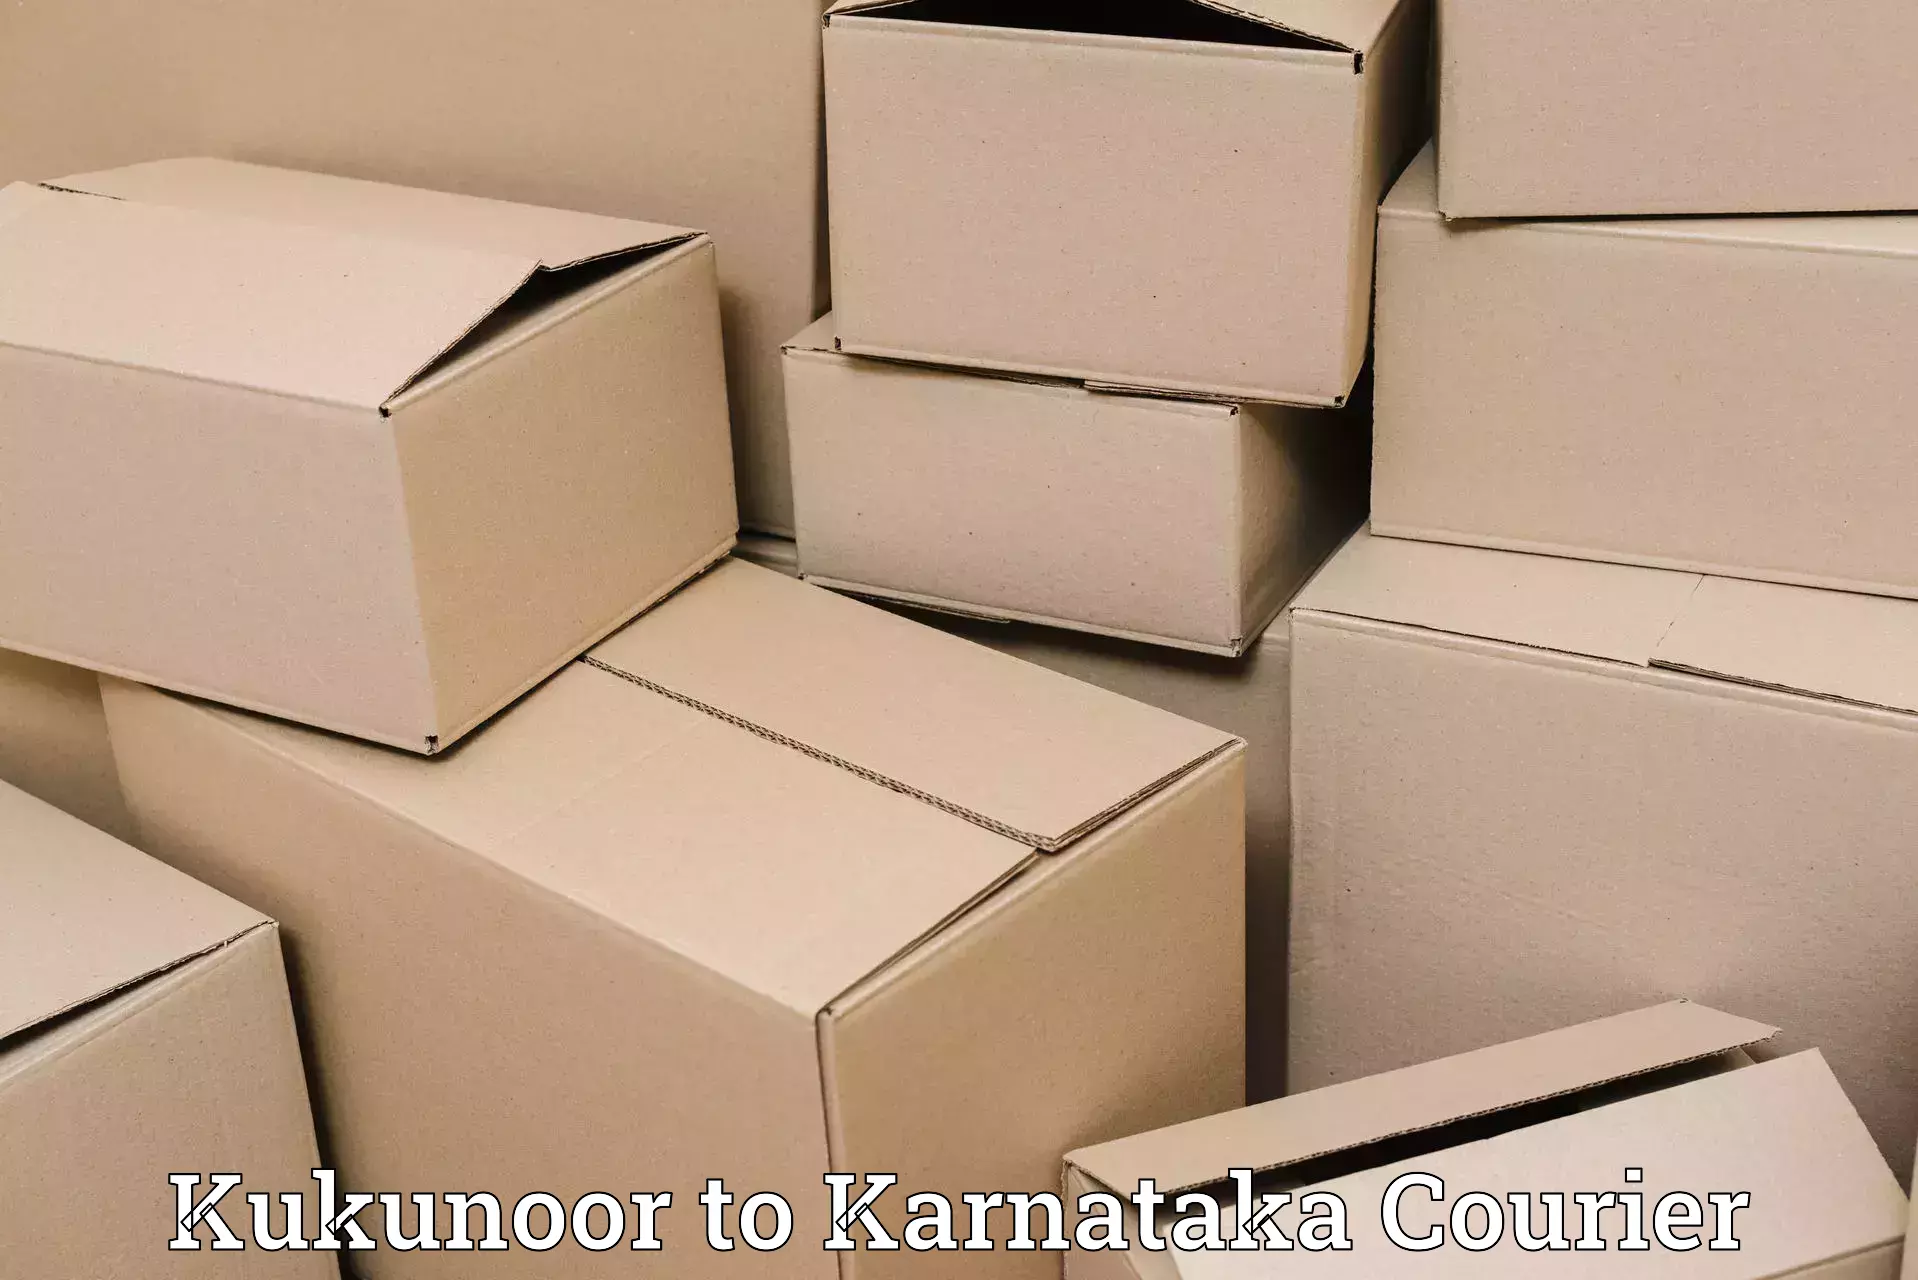 Customer-centric shipping Kukunoor to Haliyal